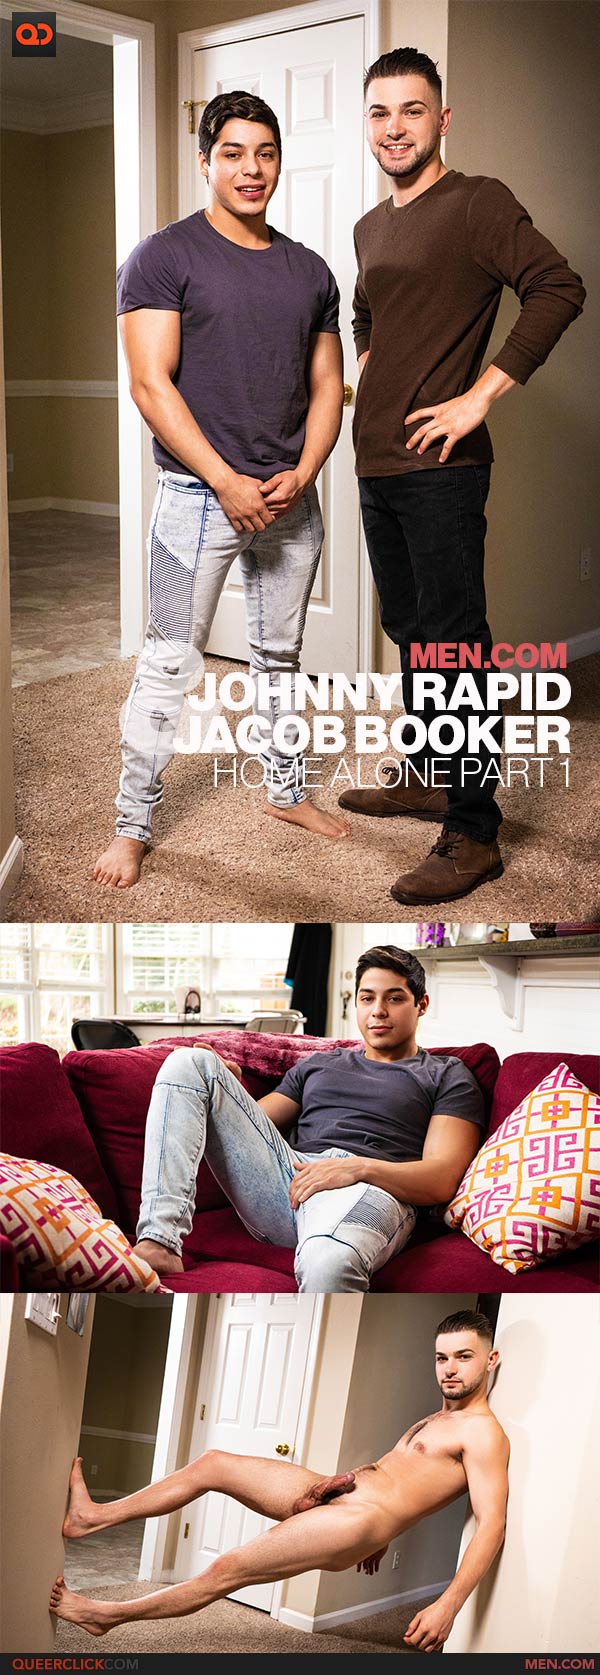 Men.com: Johnny Rapid and Jacob Booker